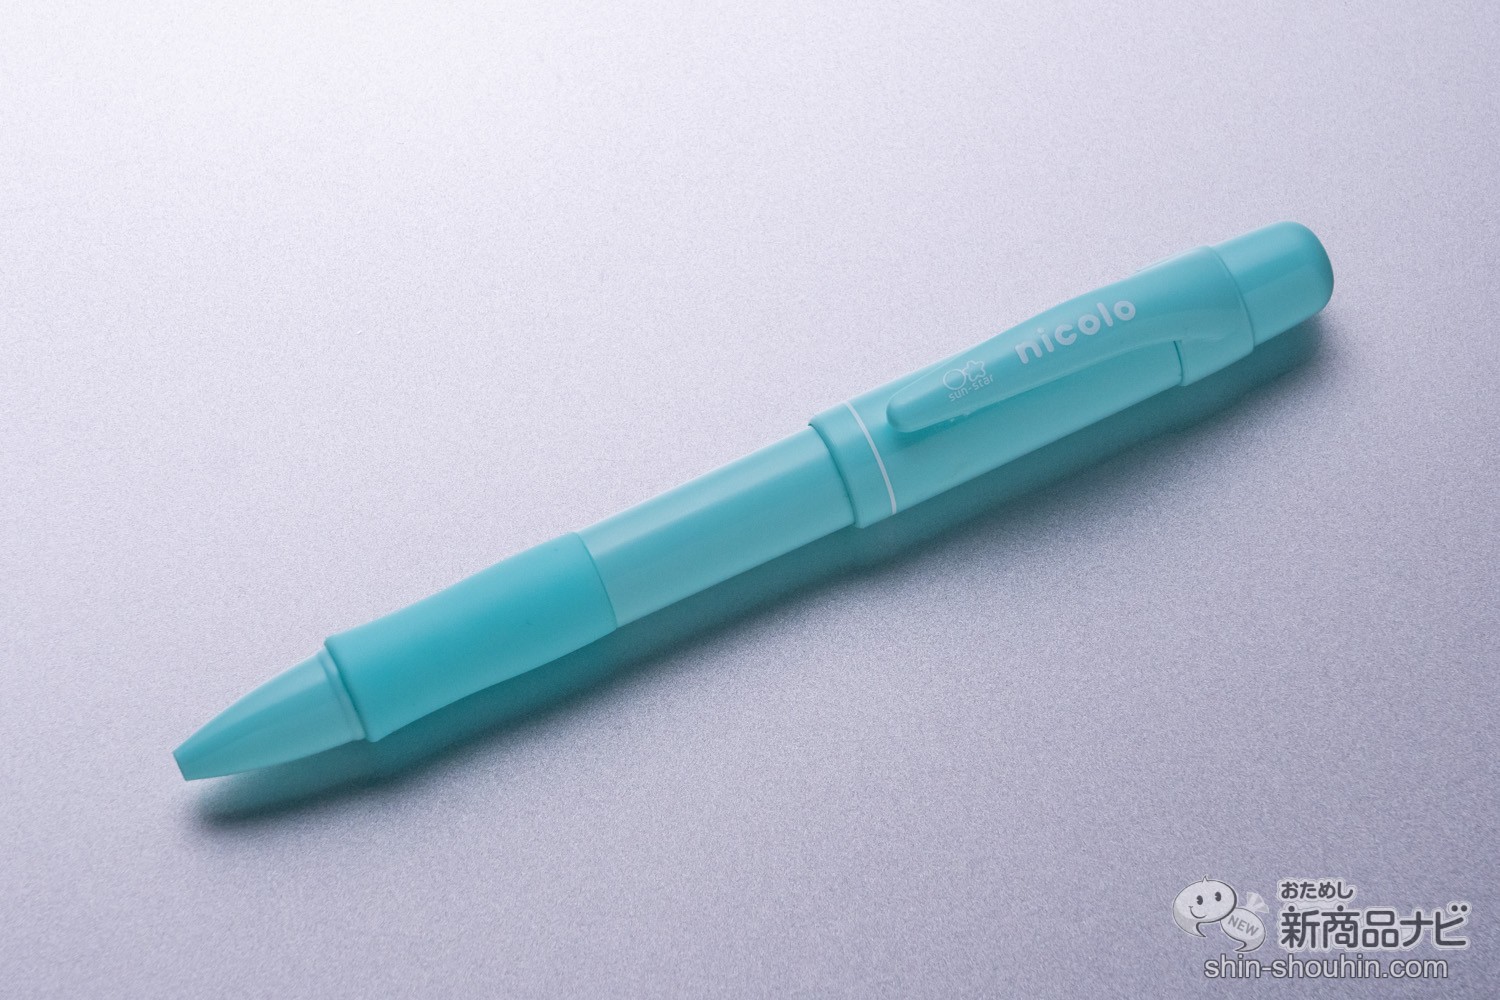 おためし新商品ナビ » Blog Archive » 1本のシャーペンで0.3mm＆0.5mm 